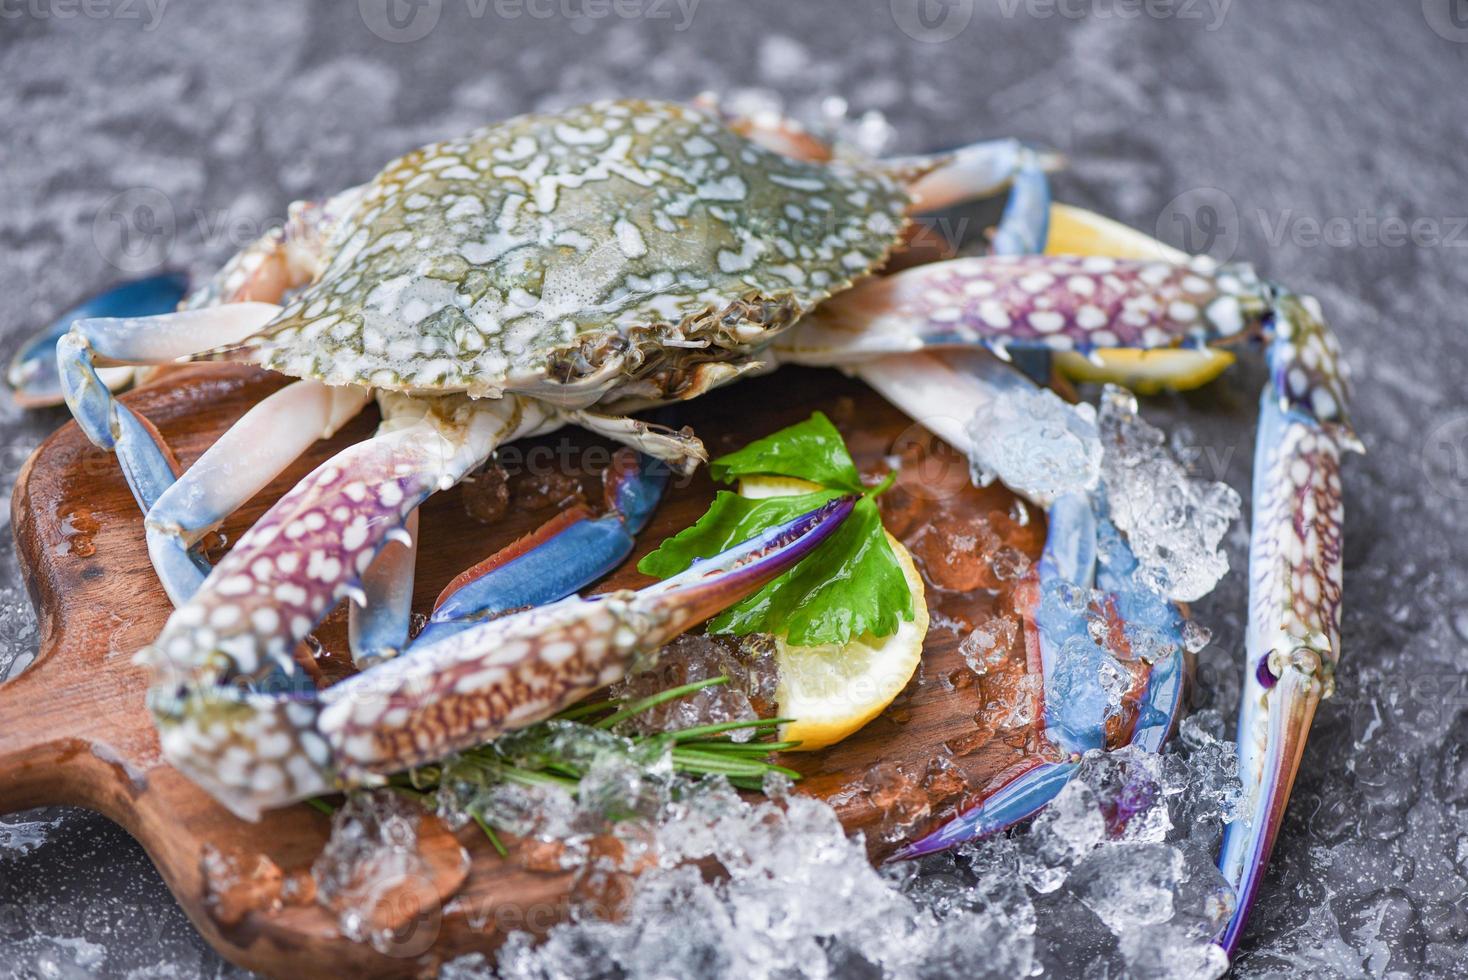 skaldjur krabba på is - färsk råblå simkrabba ocean gourmet med is på mörk bakgrund i restaurangen foto